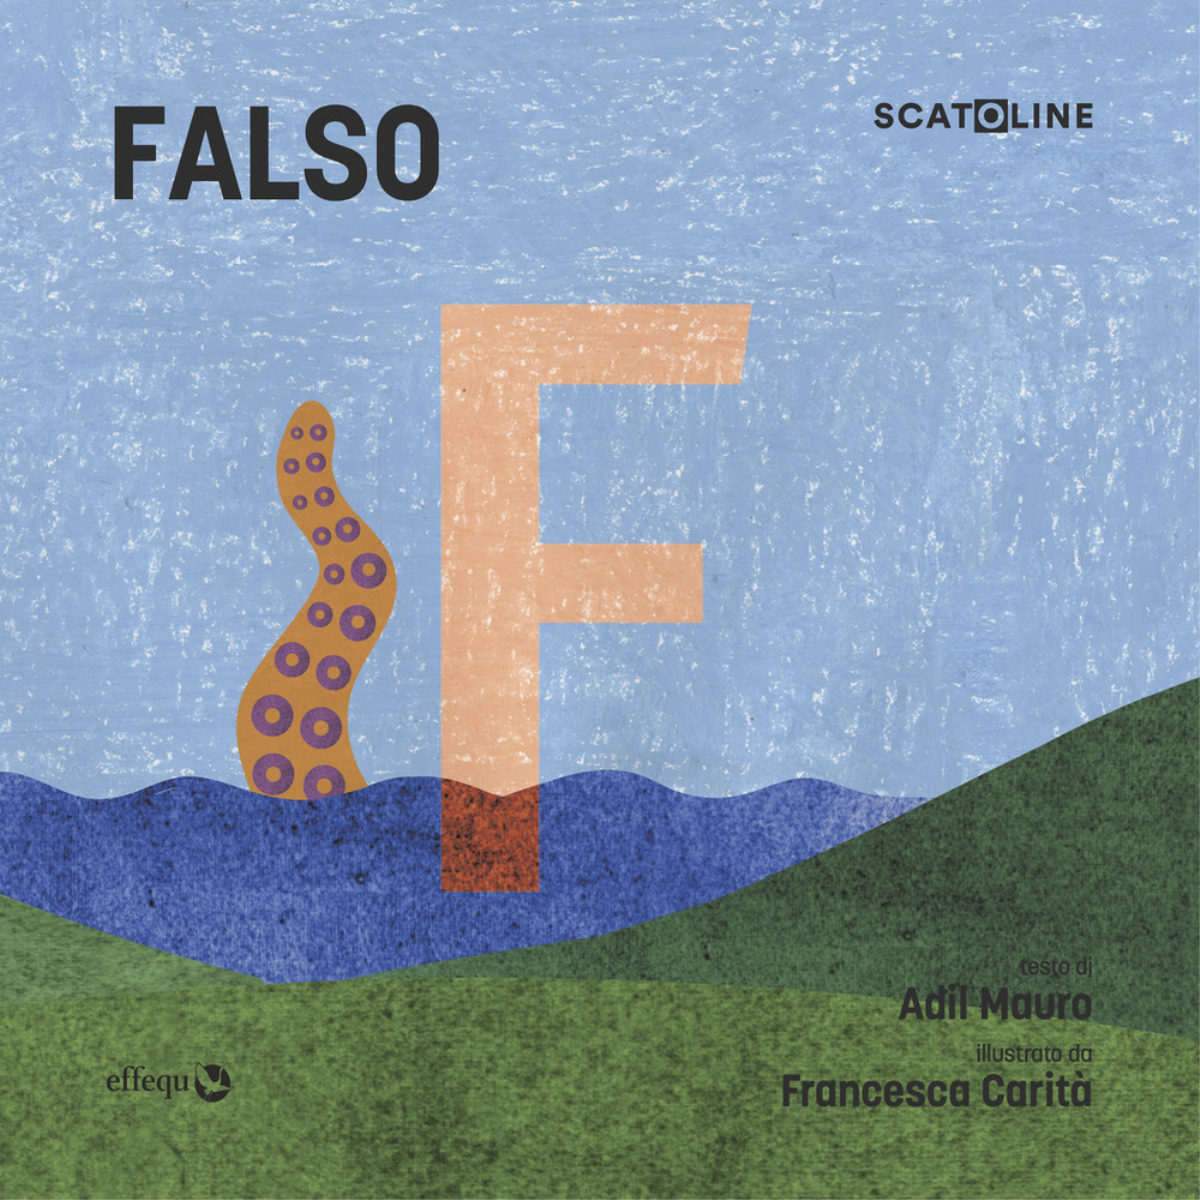 SCATOLINE | FALSO (pacco da 7) di Carit? Francesca; Adil Mauro - Effequ, 2022